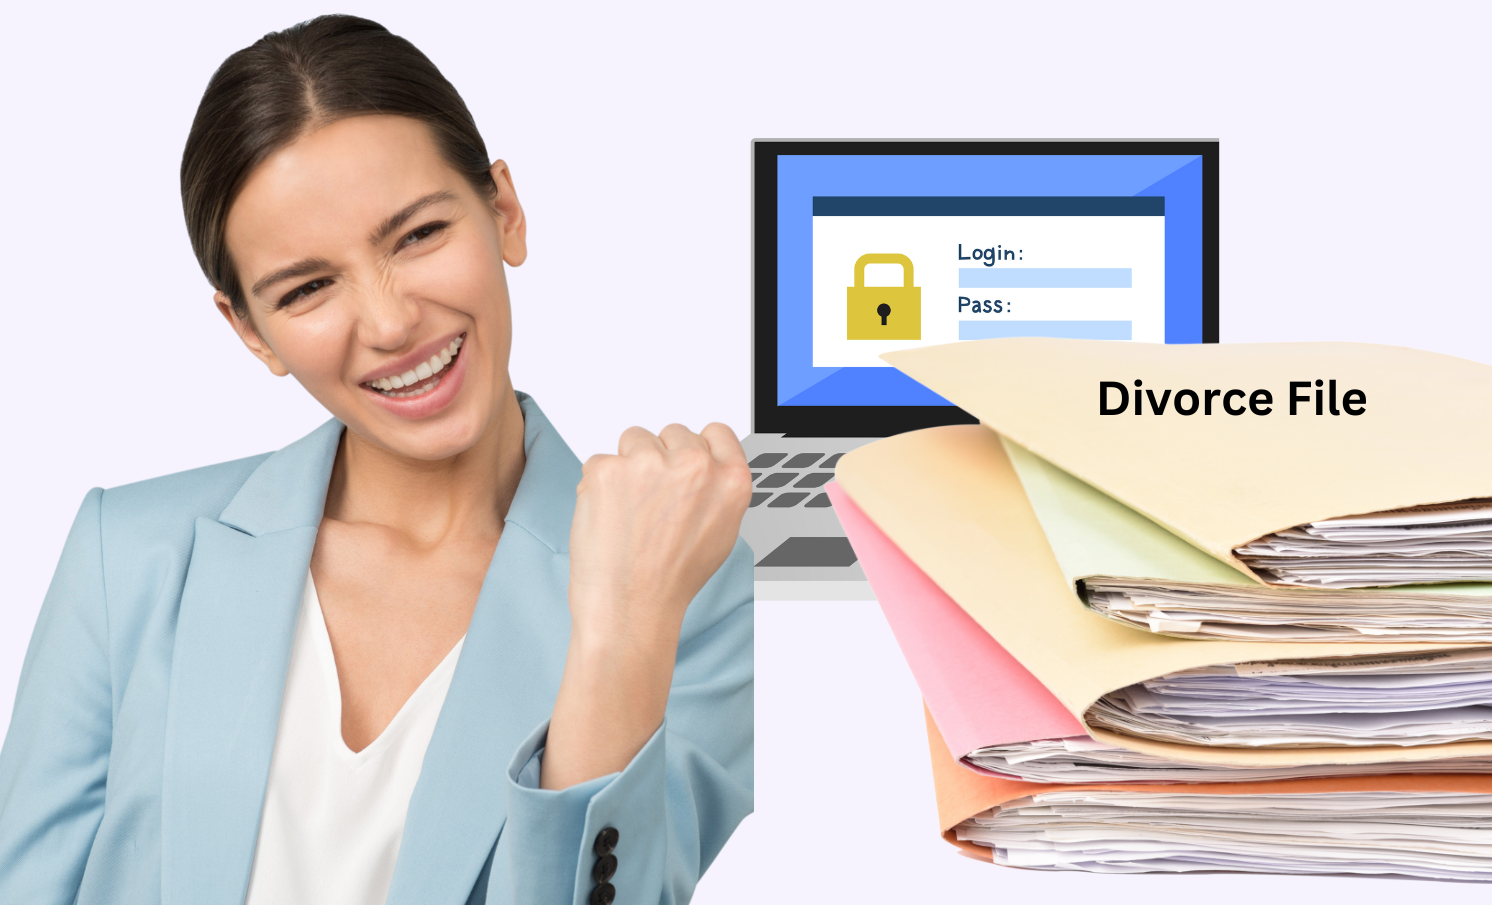 Divorce Financial Affidavit File